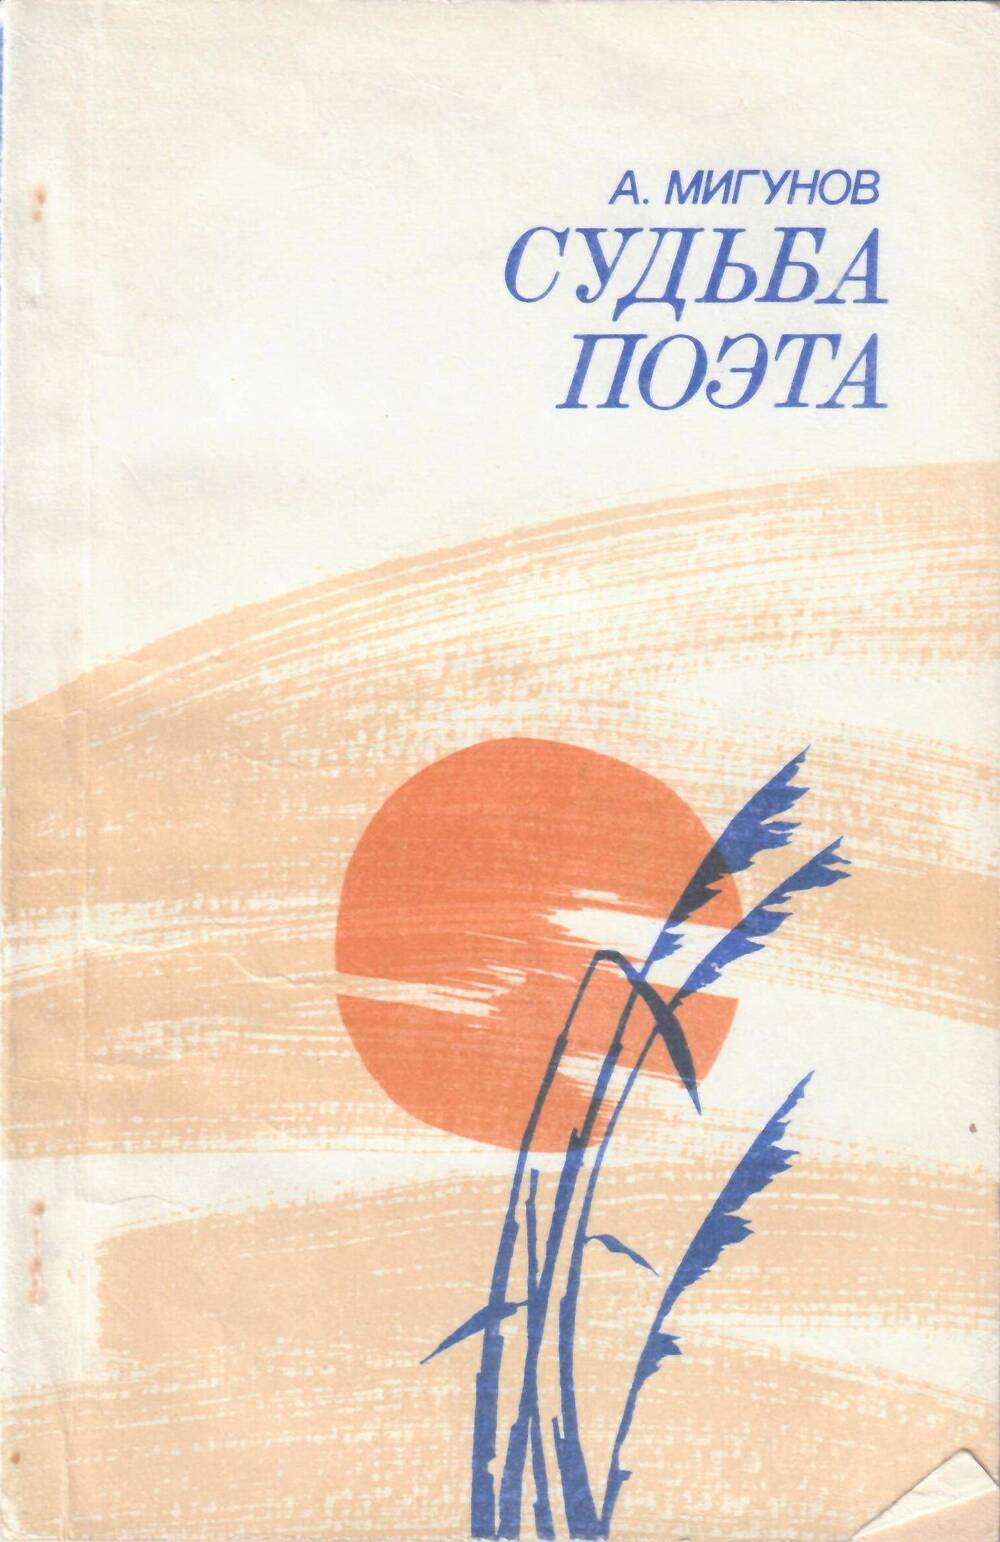 Книга Судьба поэта, Мигунов А., г. Москва, изд. Московский рабочий, 1983 г.